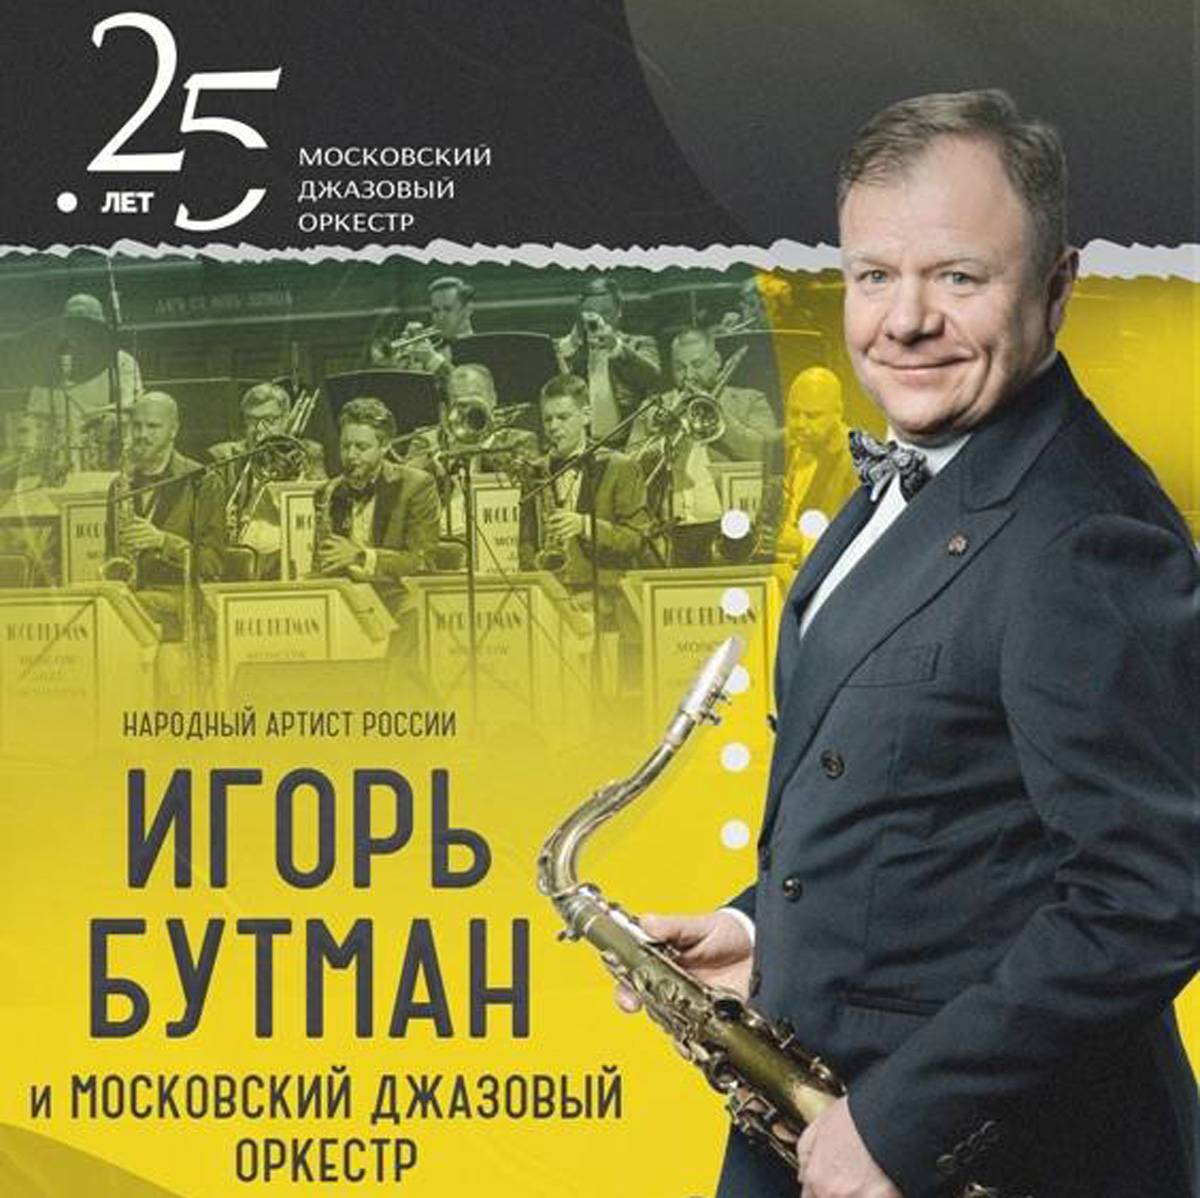 С 6 марта по 20 апреля в Великом Новгороде проходит 54-й фестиваль искусств «Русская музыка».